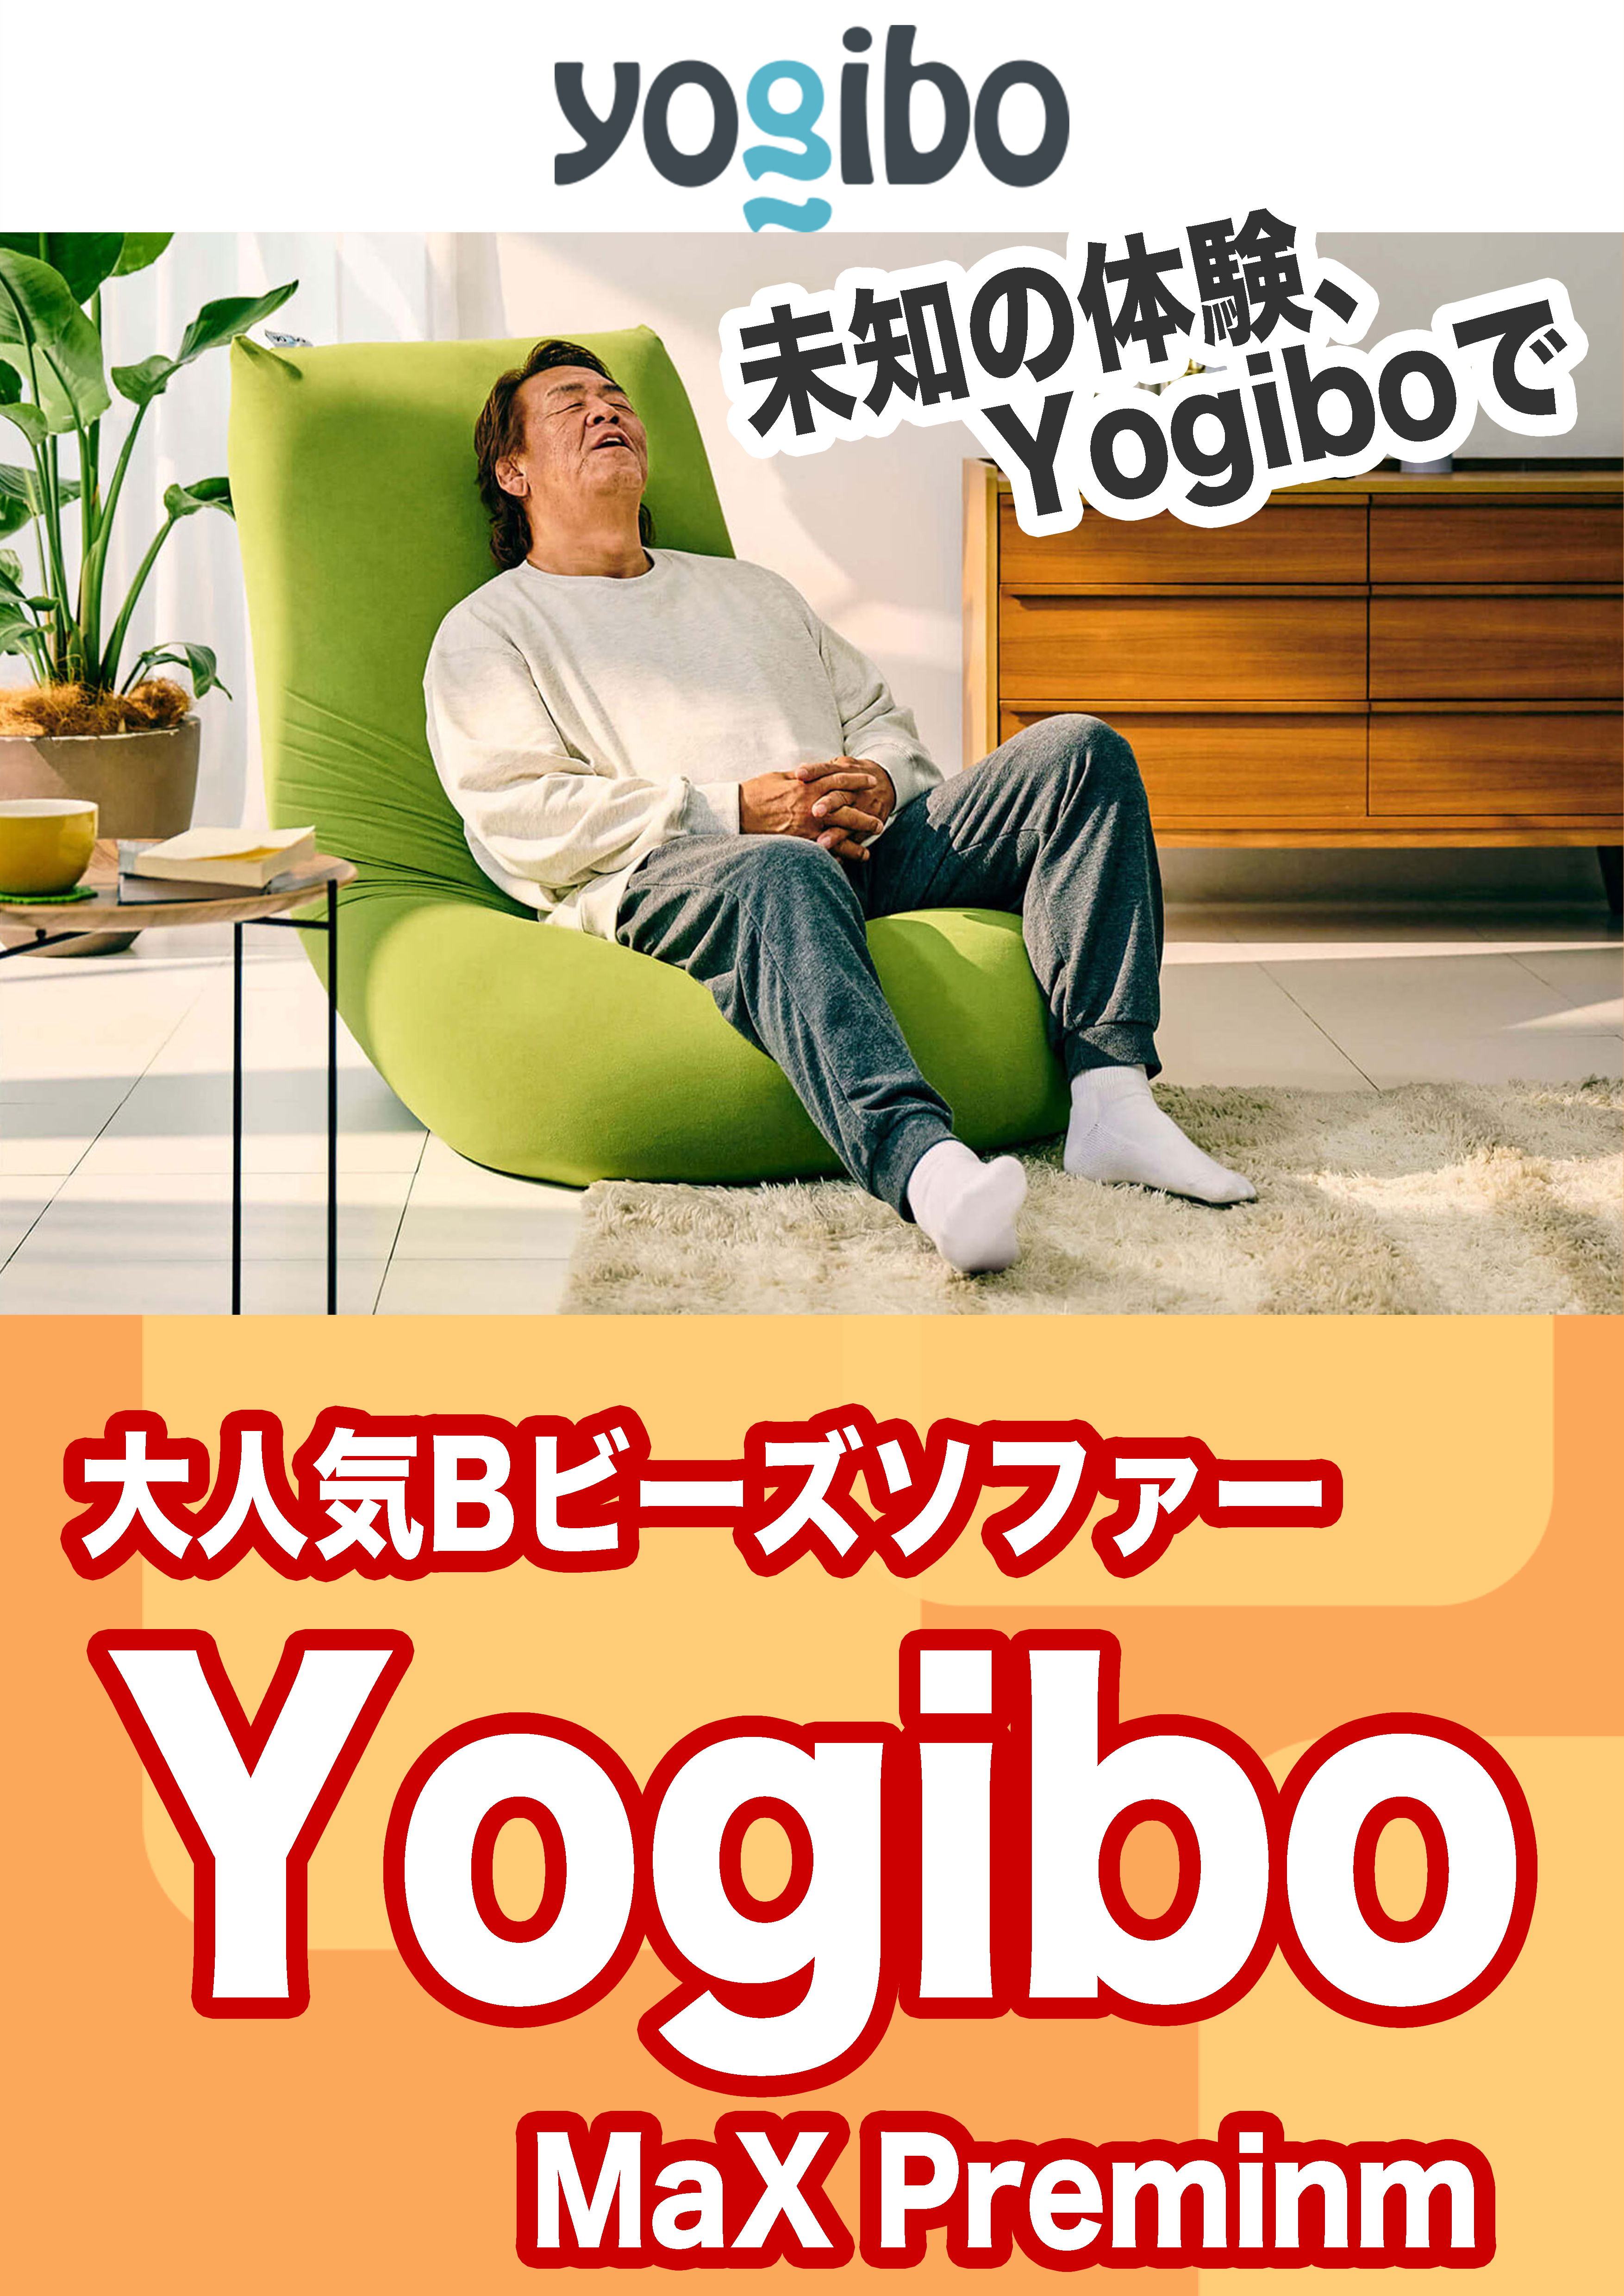 Yogibo Max premium